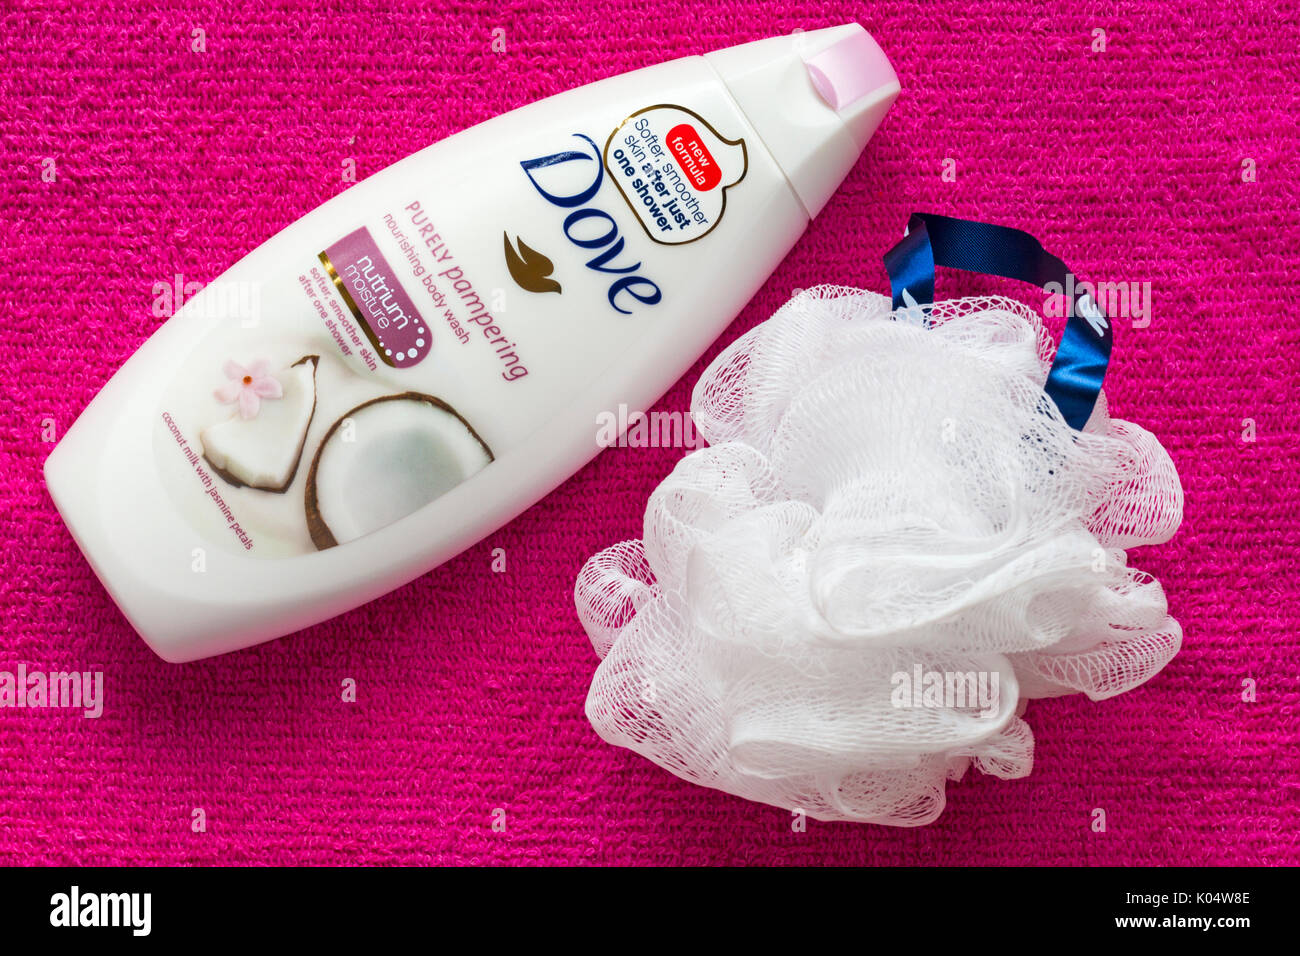 Bouteille de soins purement Dove nourishing body wash avec douche puff sur serviette rose Banque D'Images